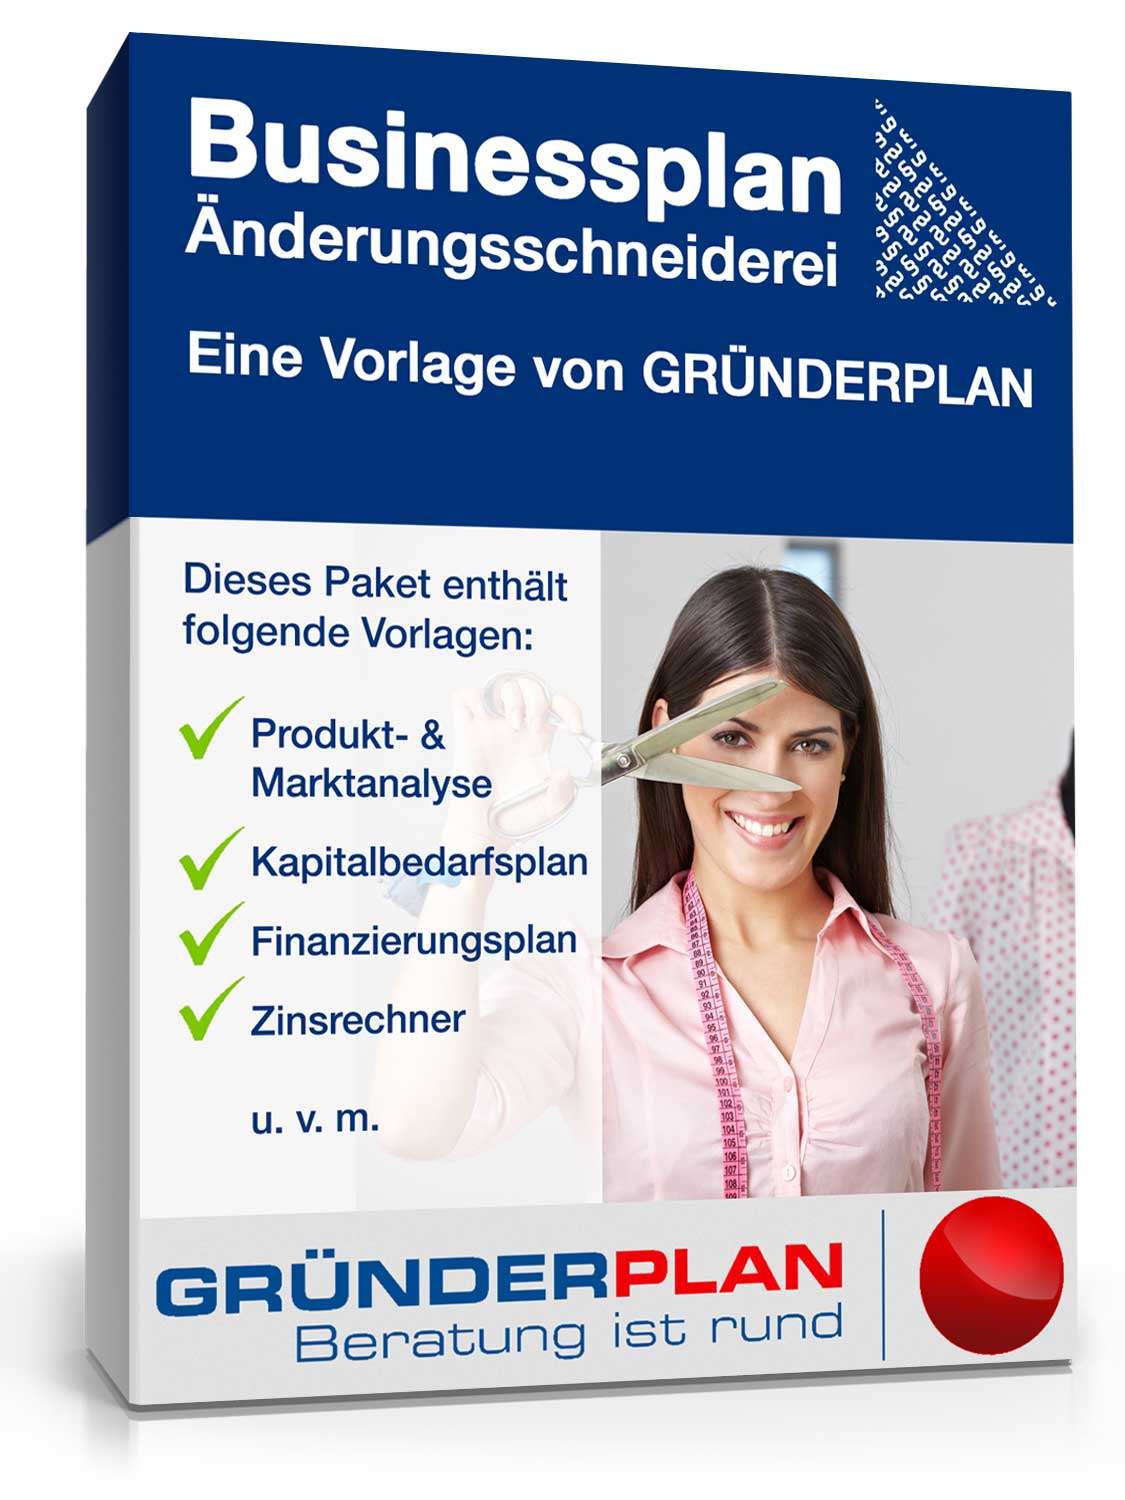 Hauptbild des Produkts: Businessplan Änderungsschneiderei von Gründerplan